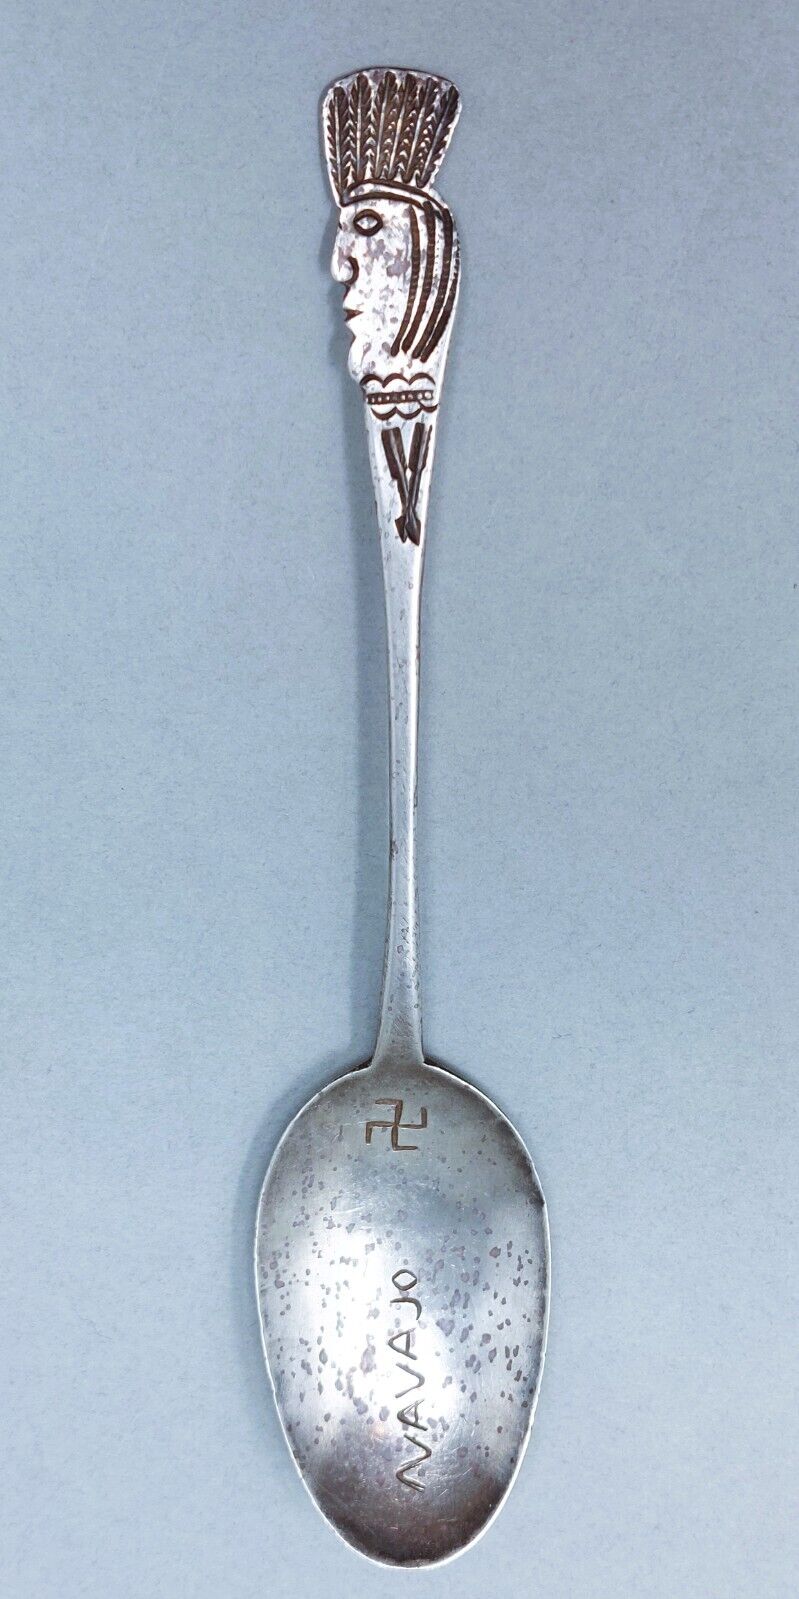 Rare HANDWROUGHT Navajo Antique Silver Souvenir Spoon Native Headdres Circa 1900